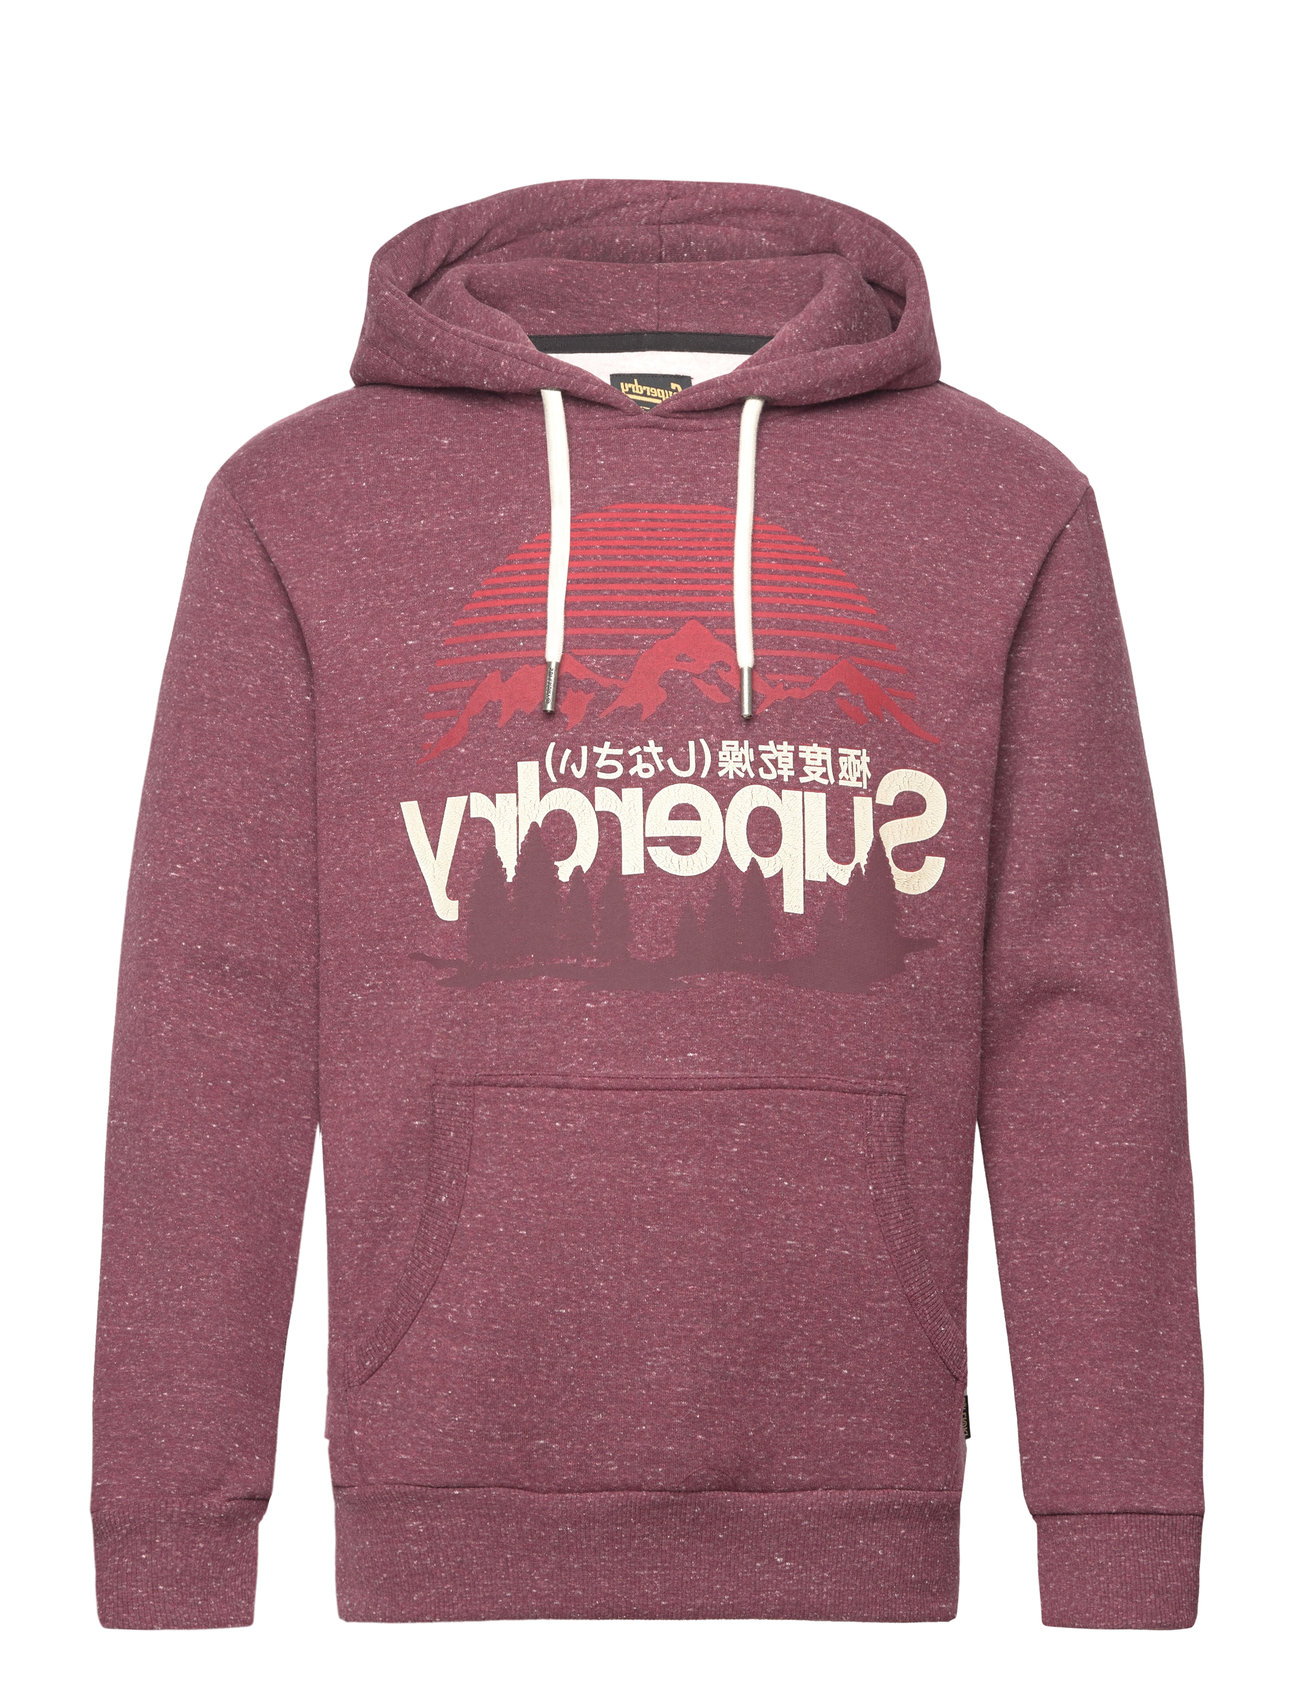 Cl Great Outdoors Graphic Hood Tops Sweatshirts & Hoodies Hoodies Burgundy Superdry